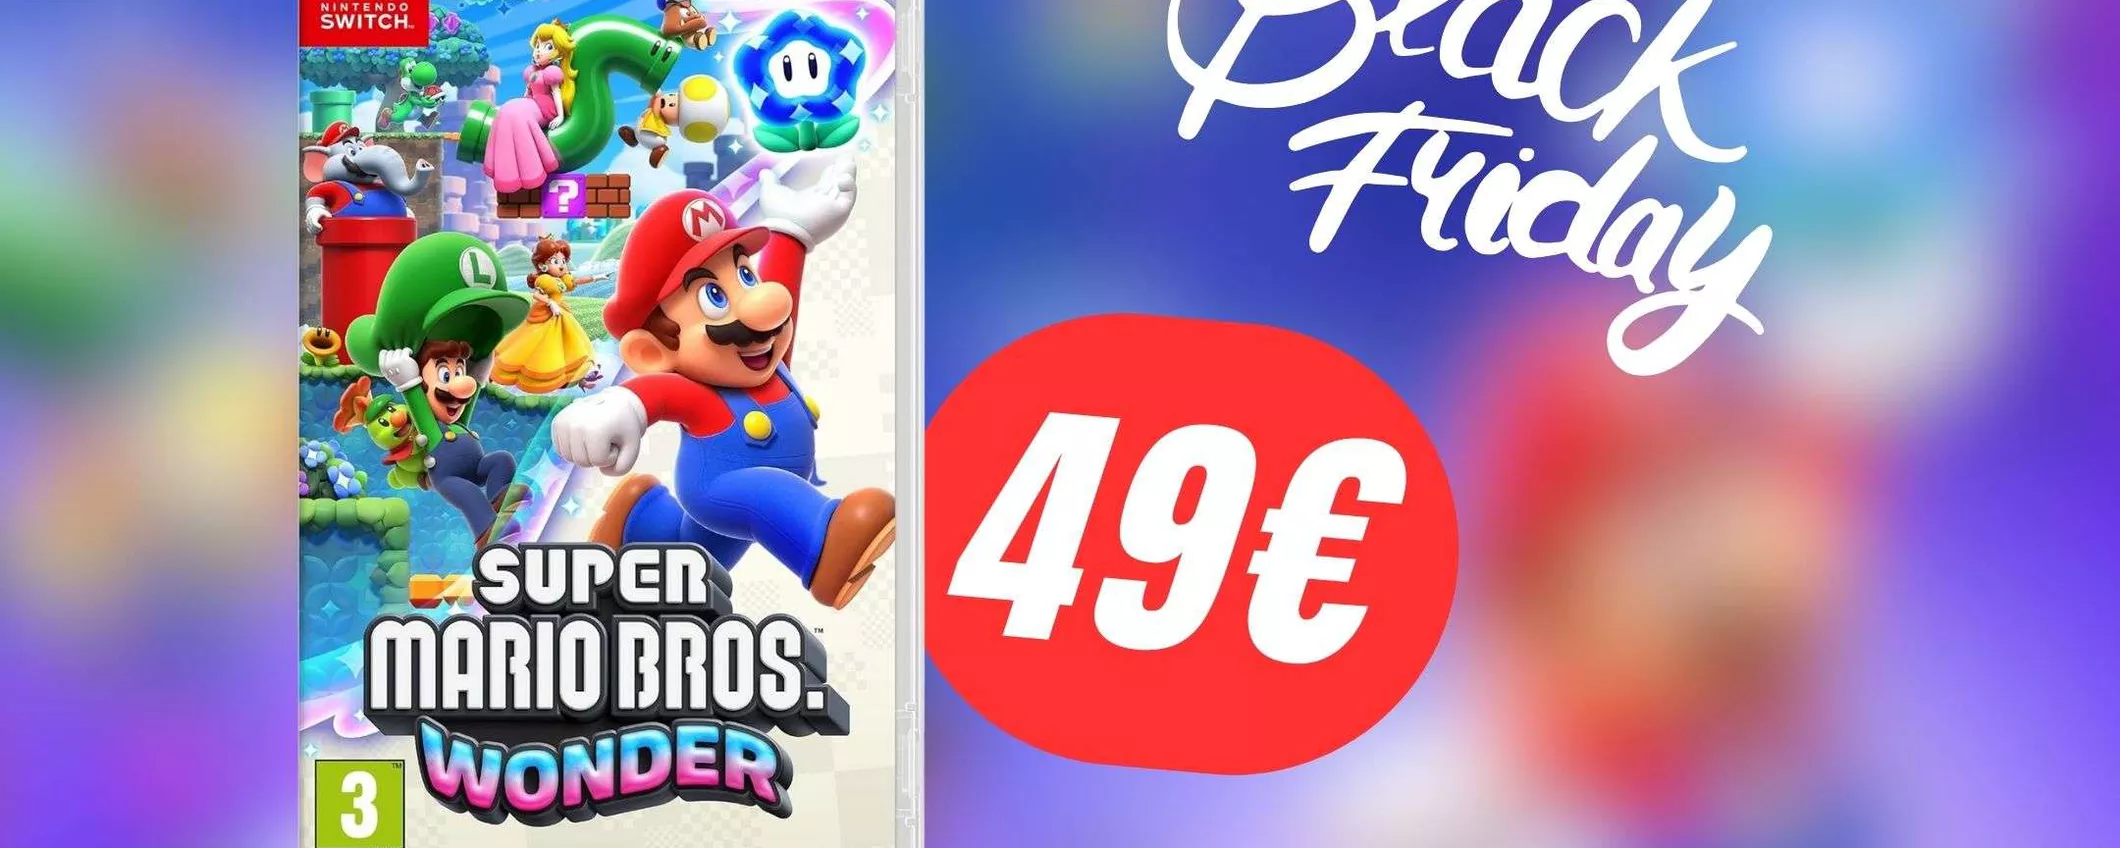 Il nuovissimo Super Mario Bros. Wonder per Nintendo Switch è scontato su Amazon!